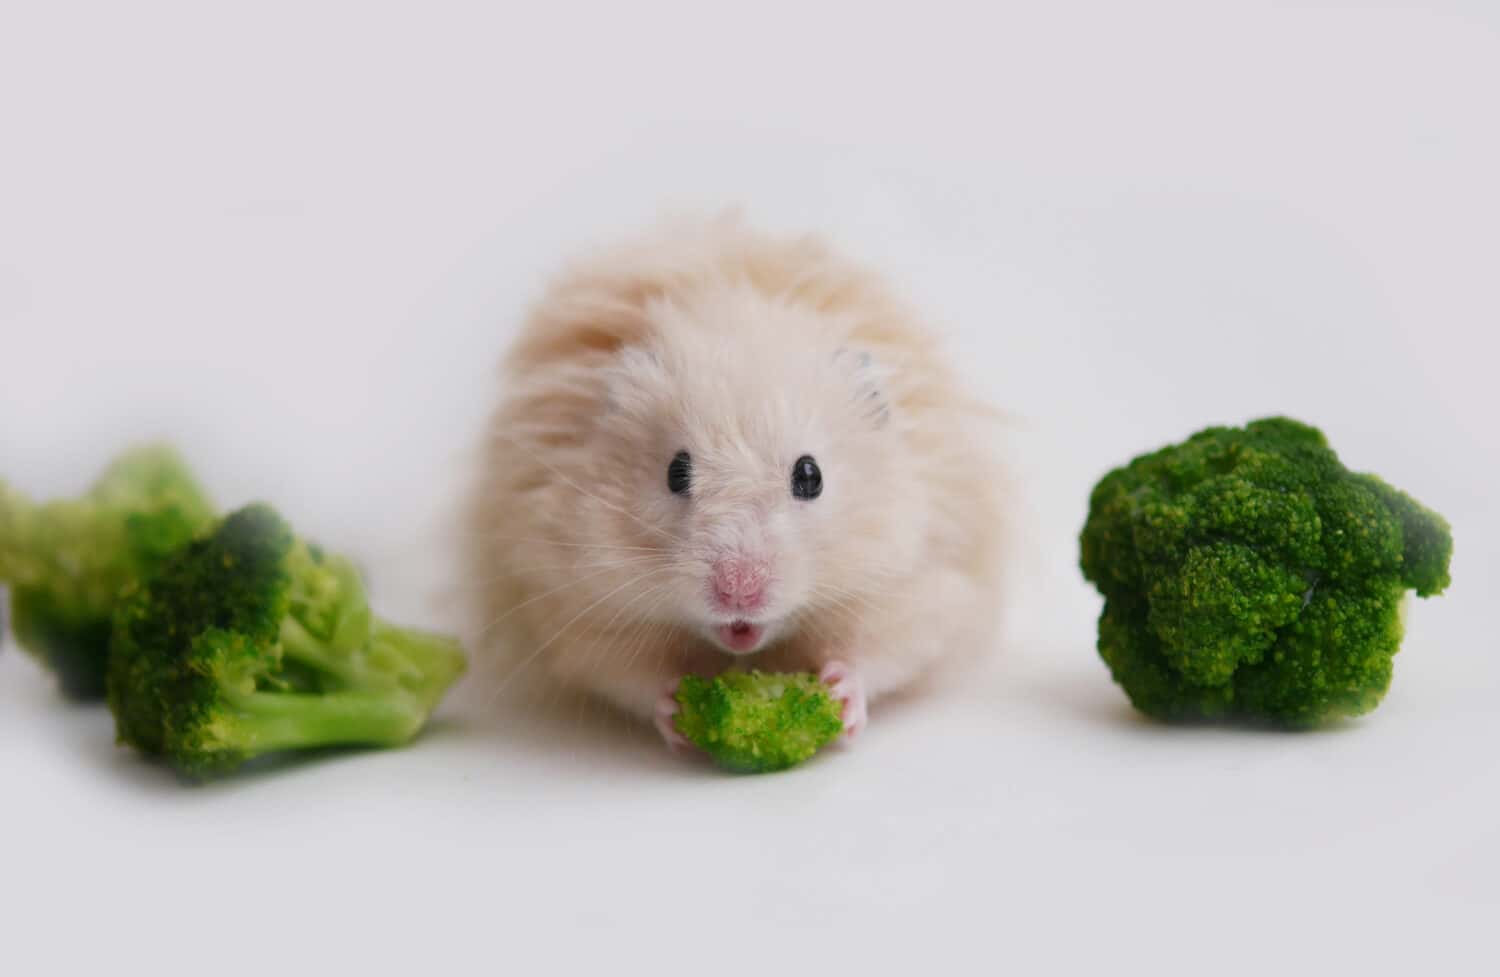  Hamster eating broccoli.